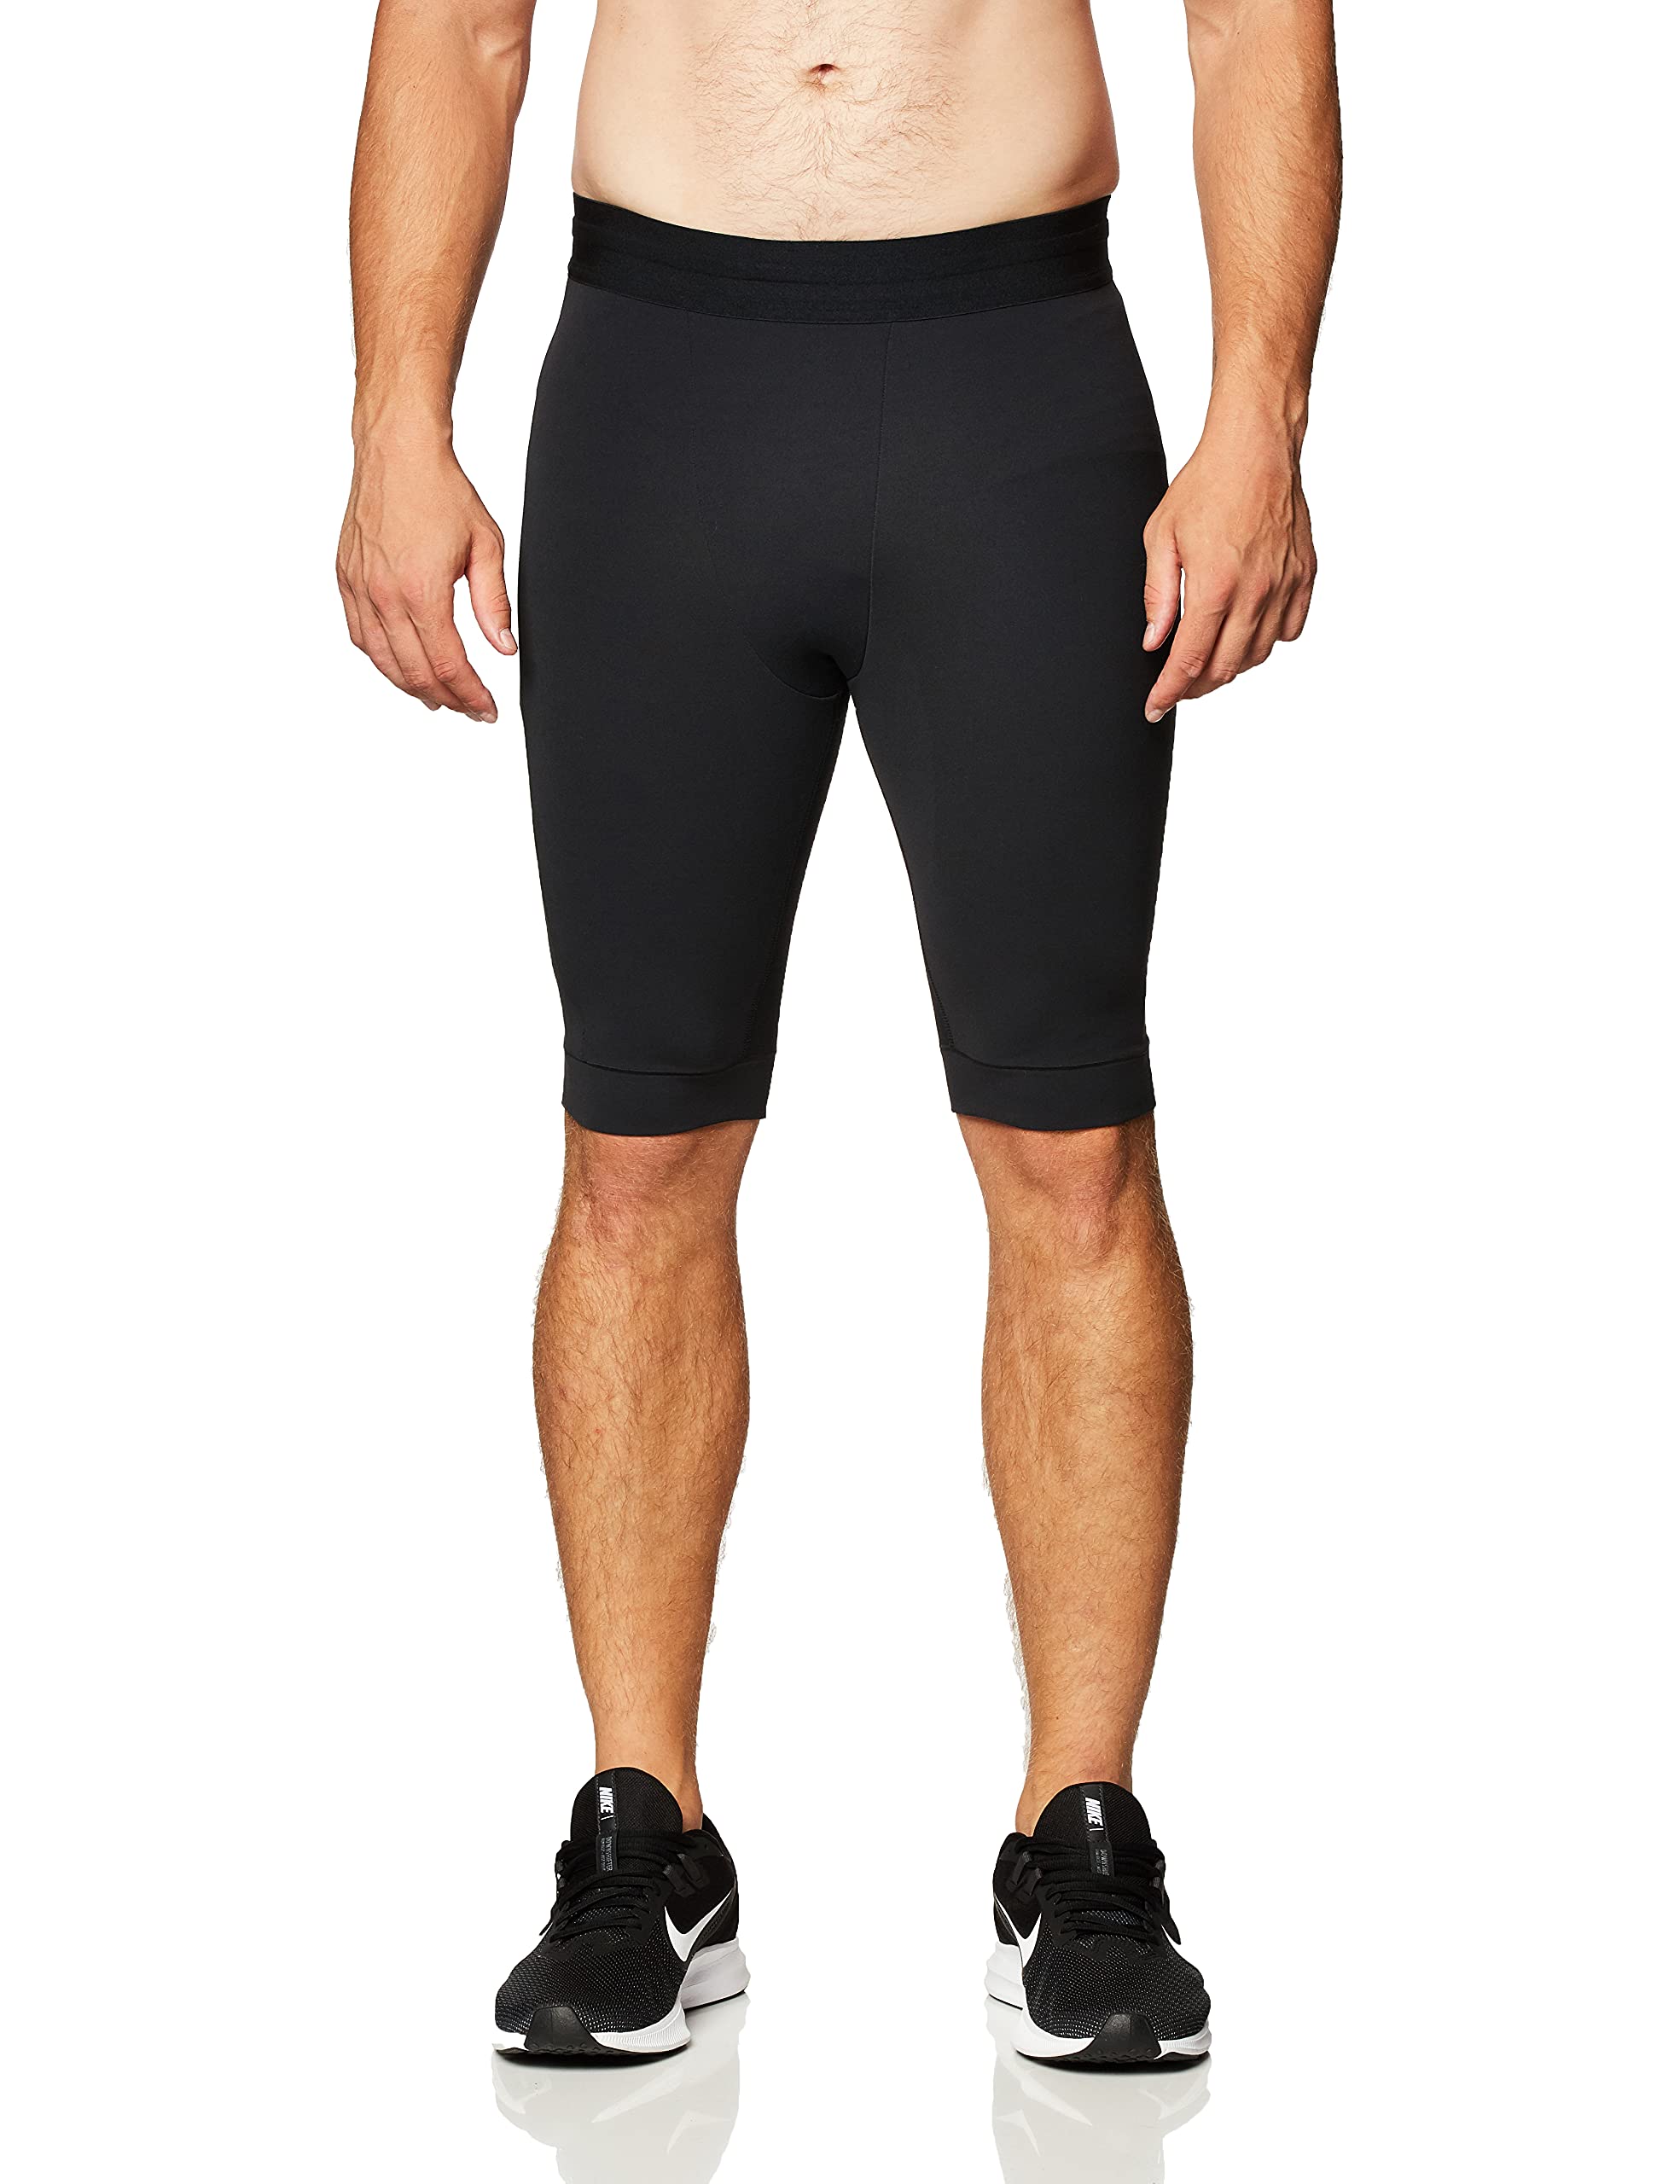 NIKE Men's Yoga Dri-fit Short Trousers.